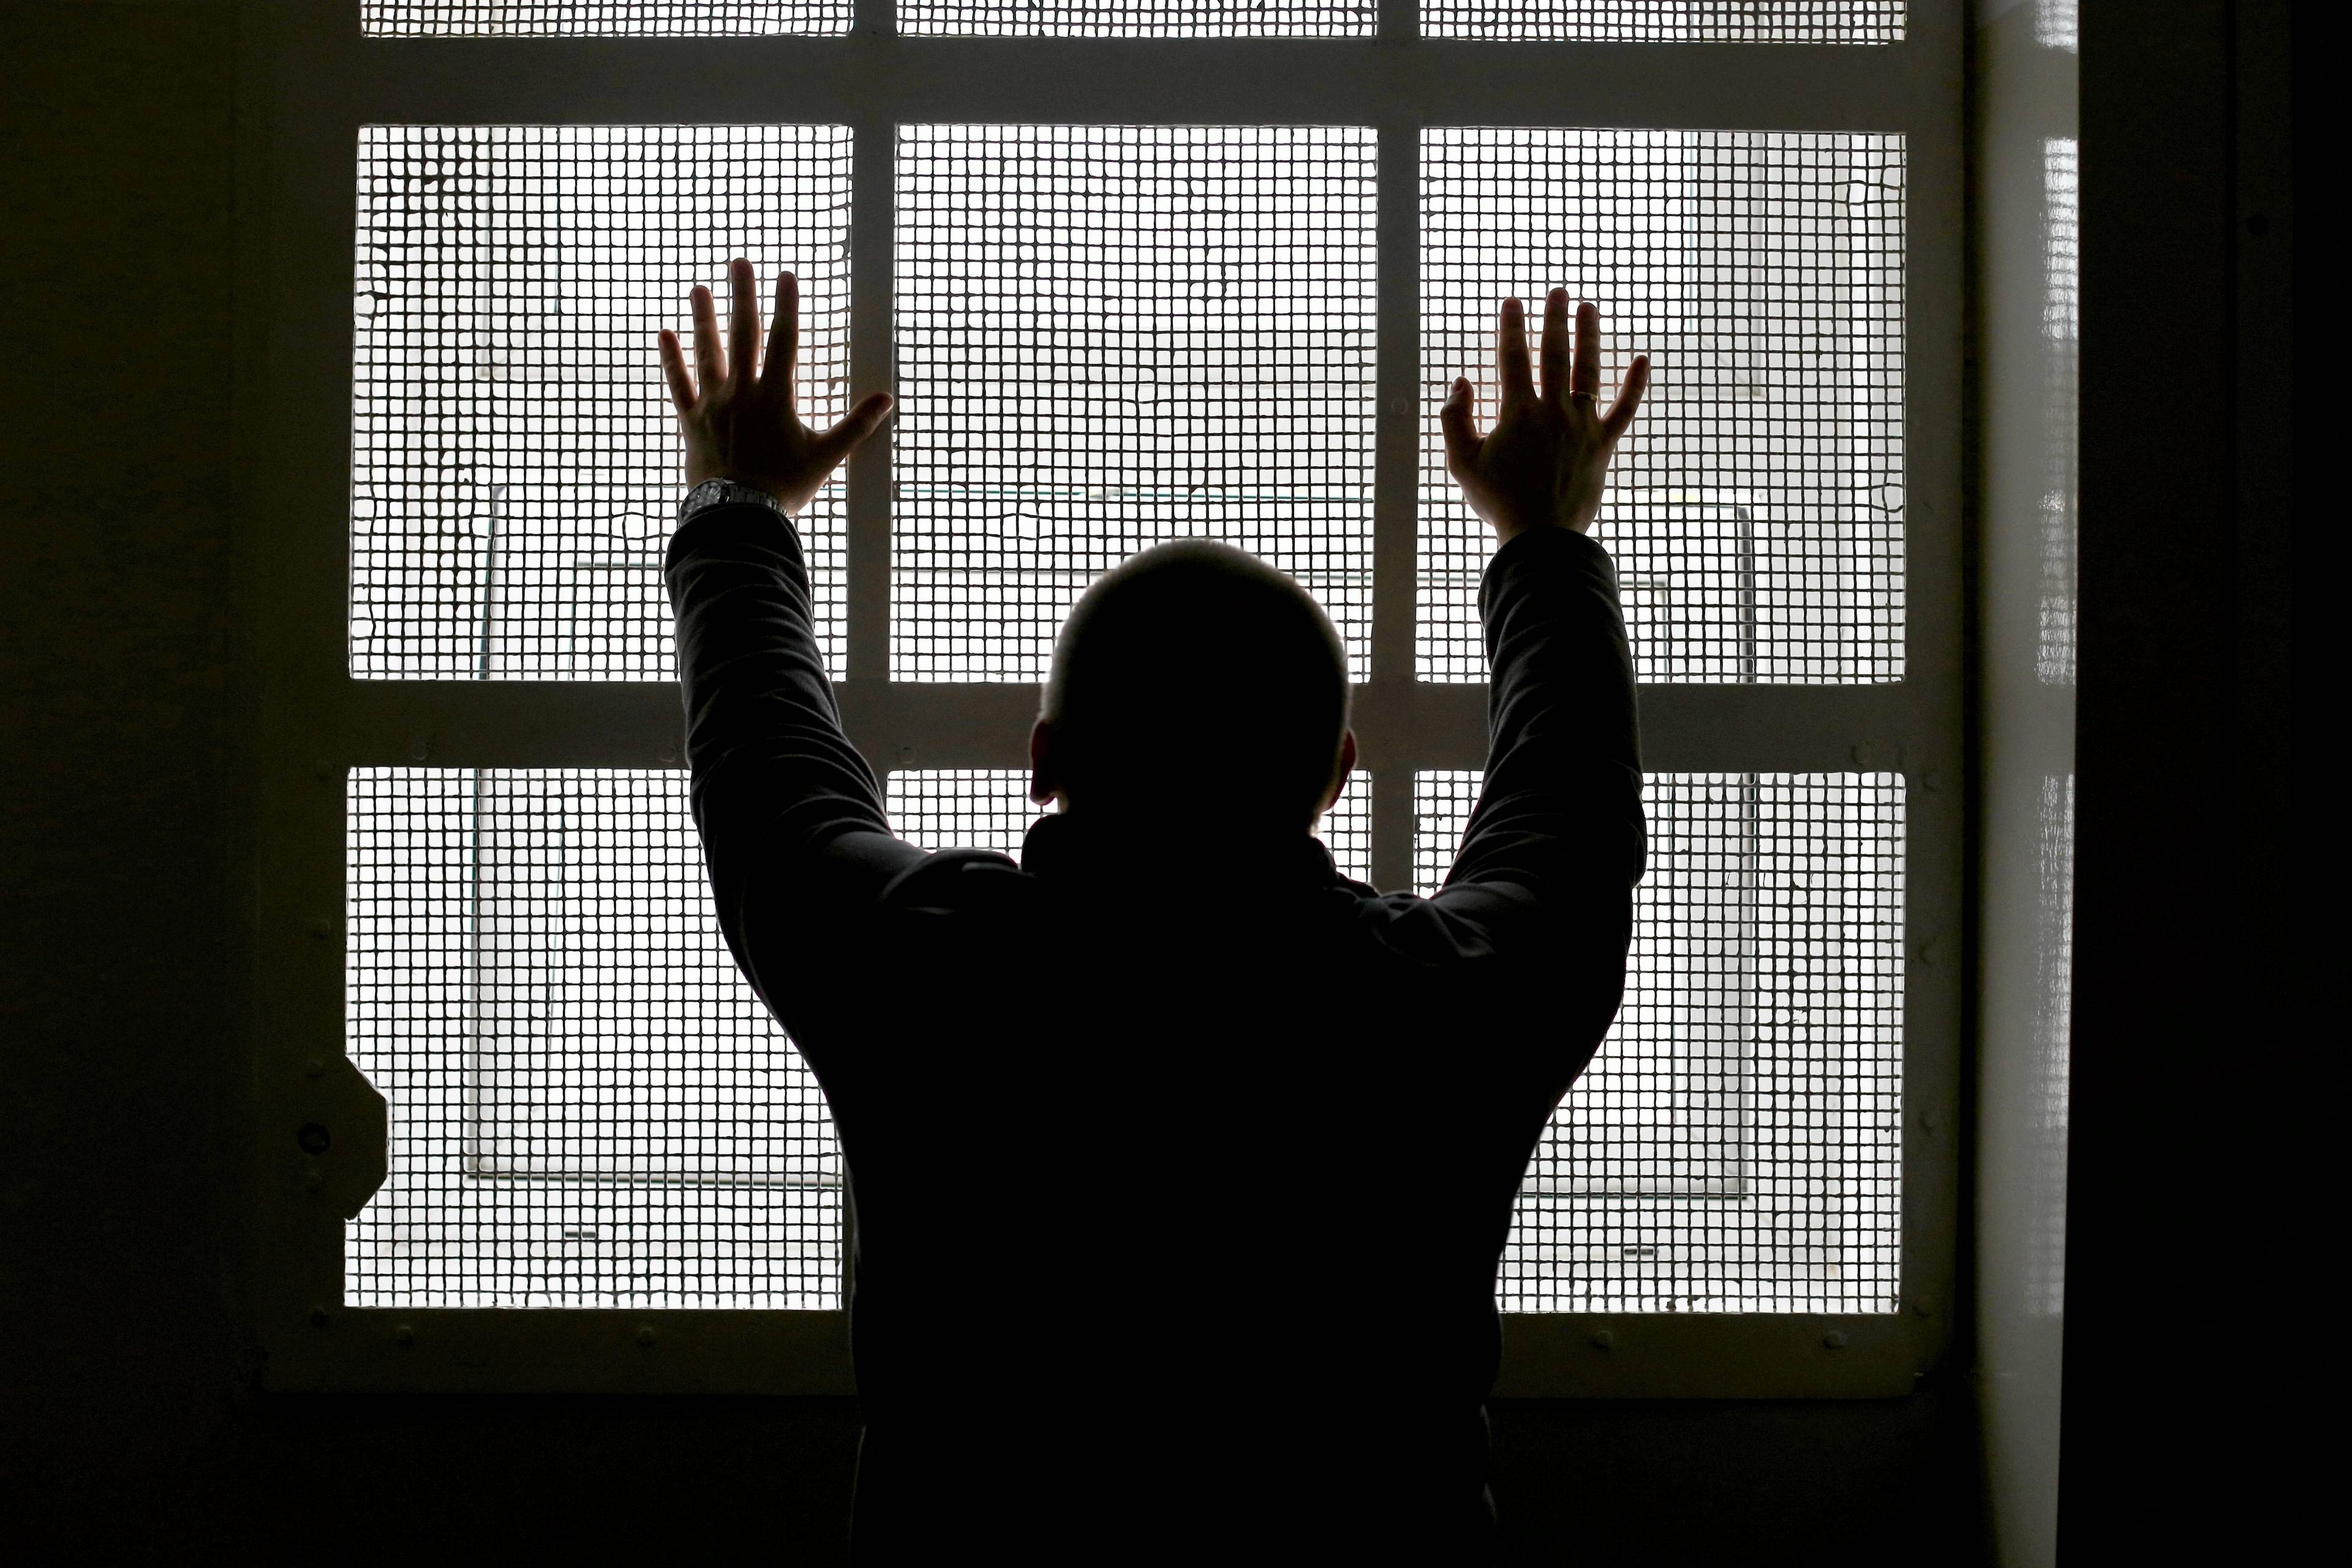 Mężczyzna stojący tyłem do obiektywu przy kracie więziennej